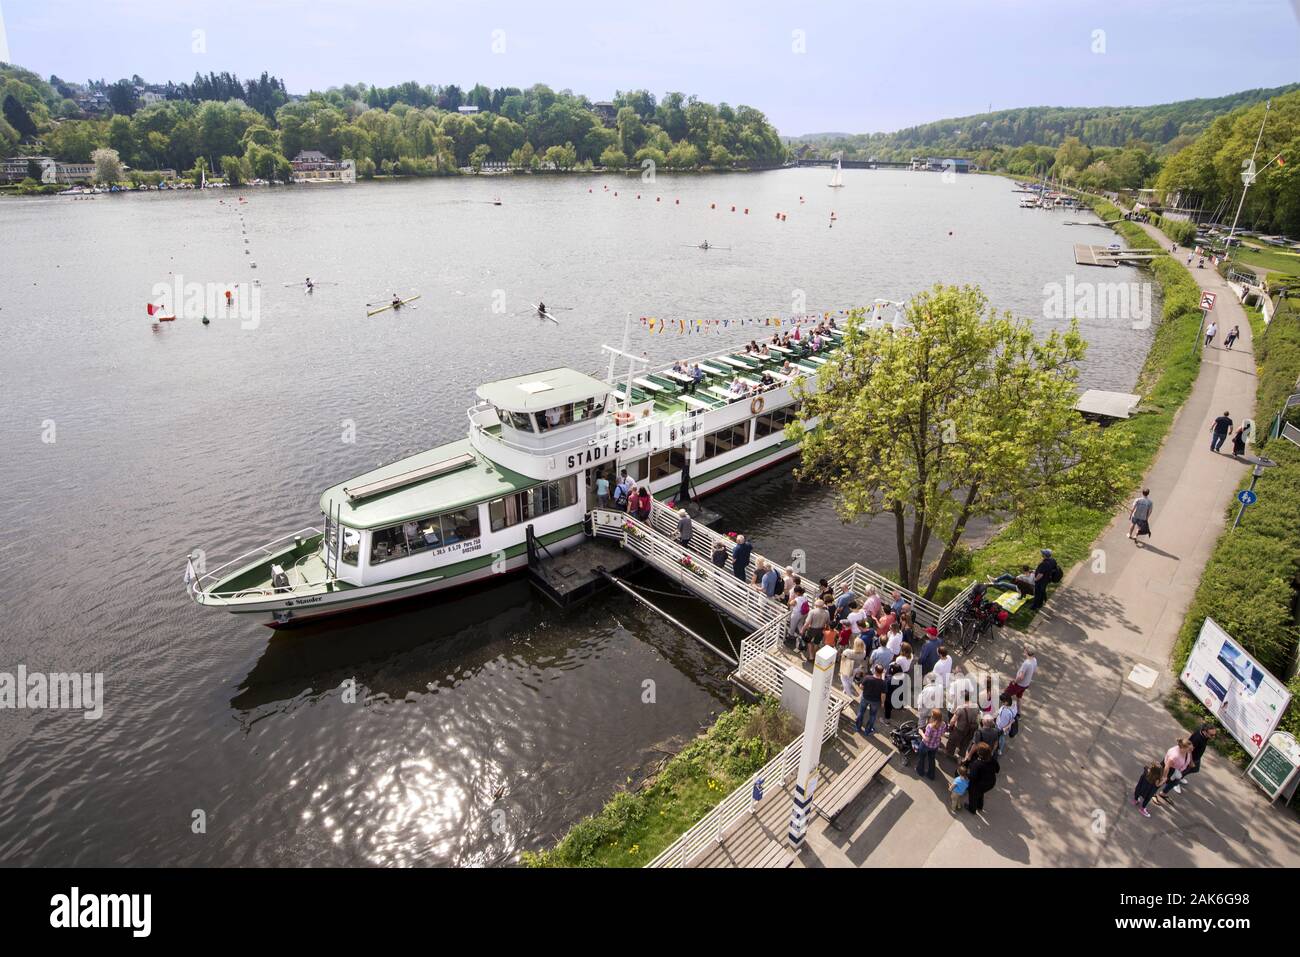 Essen: Touristenboot auf dem Baldeneysee, Ruhrgebiet | usage worldwide Stock Photo